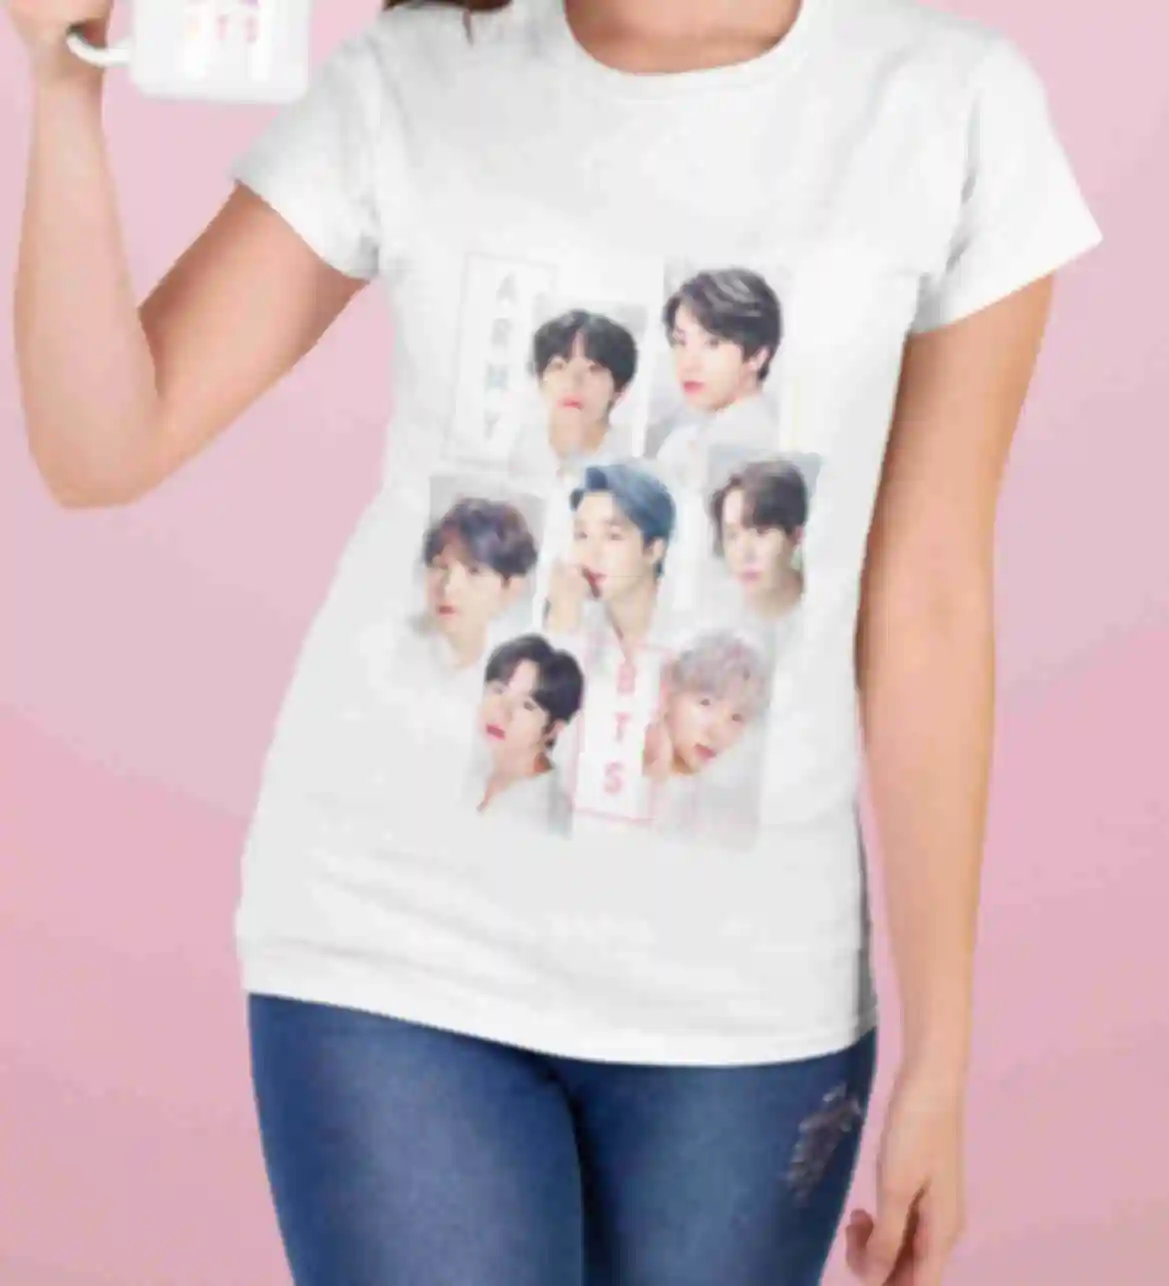 Футболка №9 • BTS ARMY постер • БТС ⦁ Мерч ⦁ Одежда для фанатов K-POP и группы BTS. Фото №1